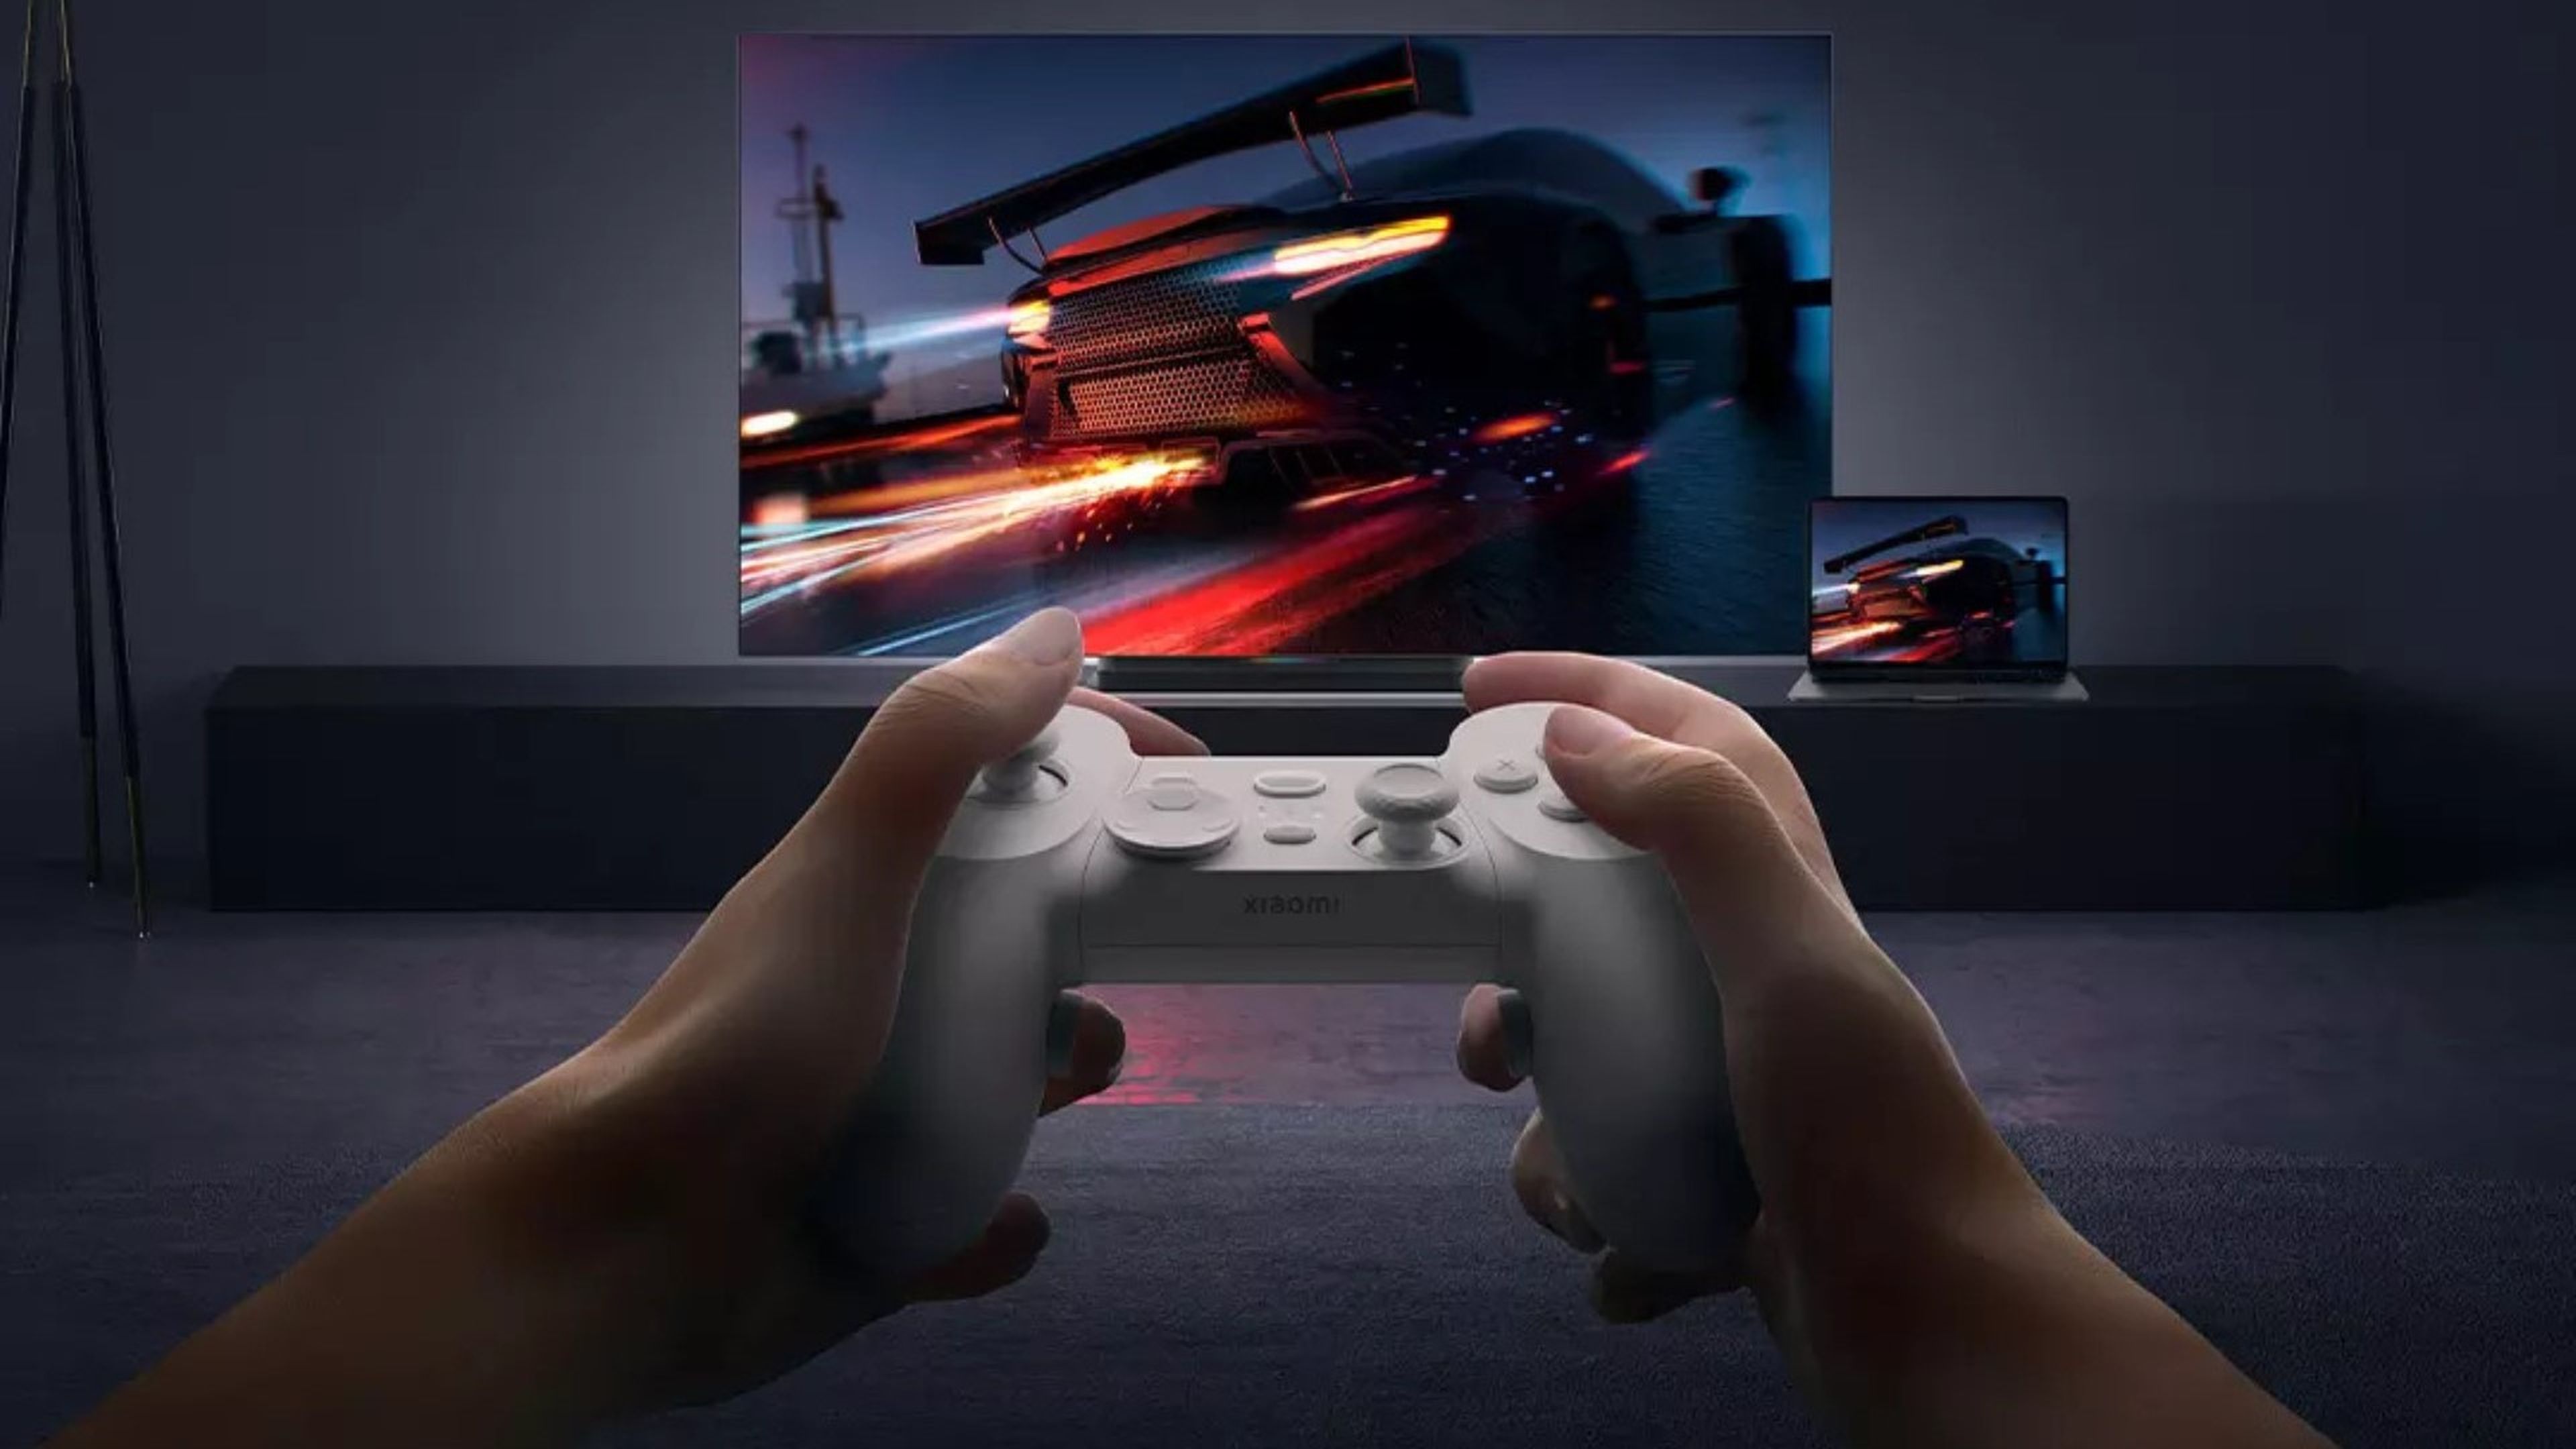 Xiaomi prepara un mando parecido al de PS4 para jugar en PC y móviles